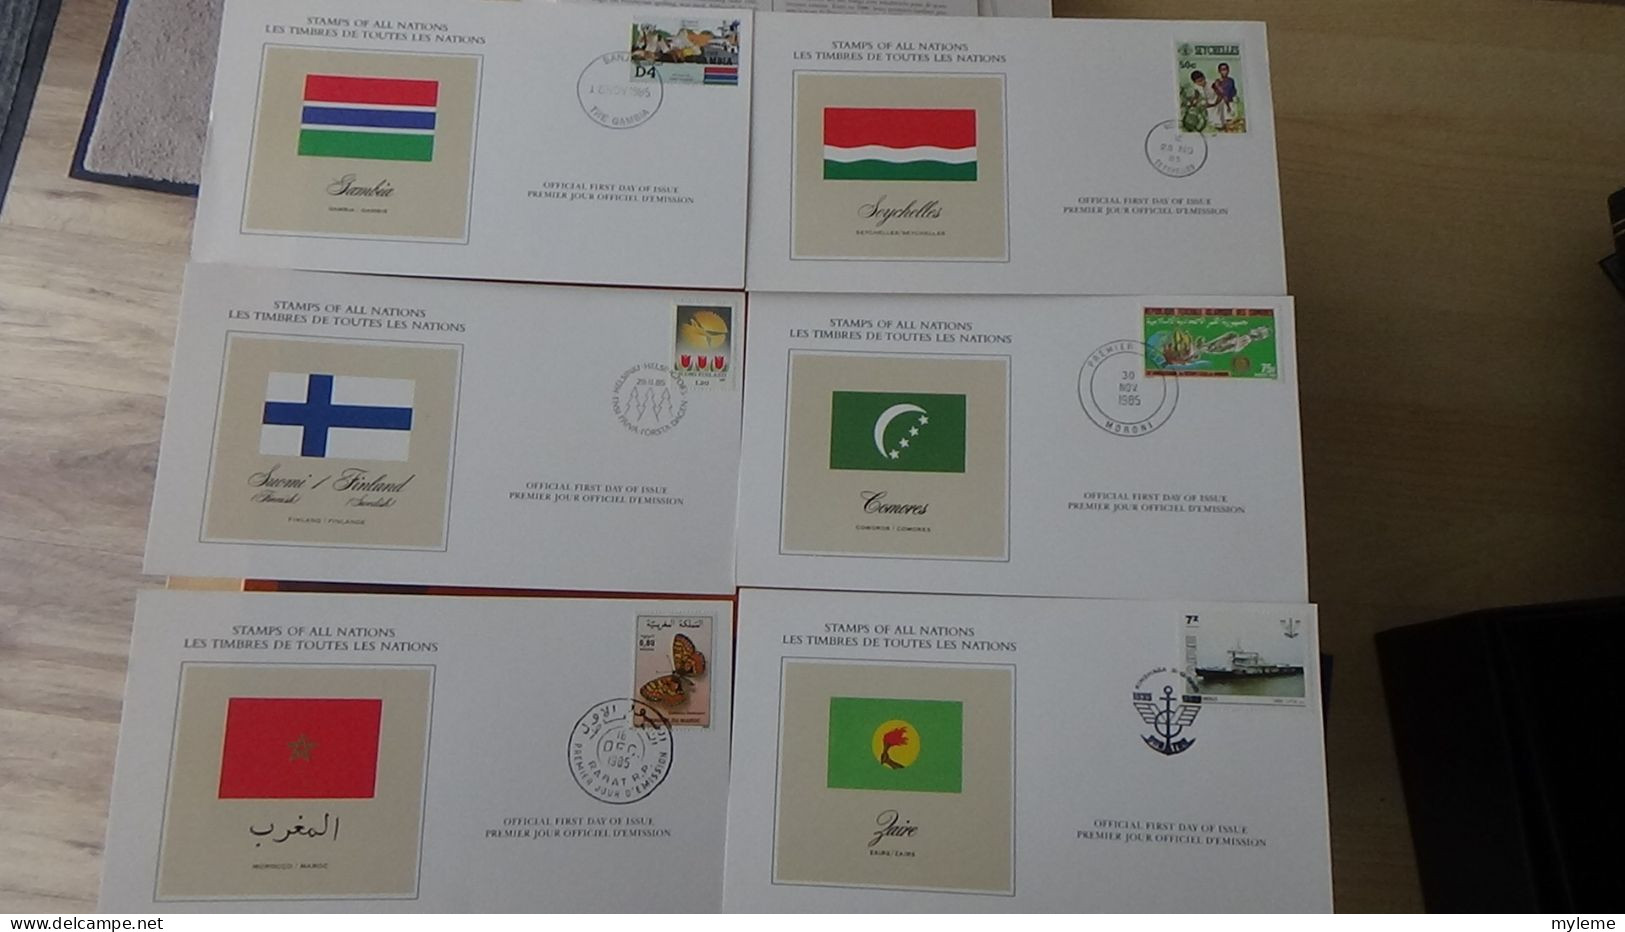 BF72 Bel ensemble de documents avec timbres ** sur les animaux, véhicules et drapeaux + coffret A saisir !!!